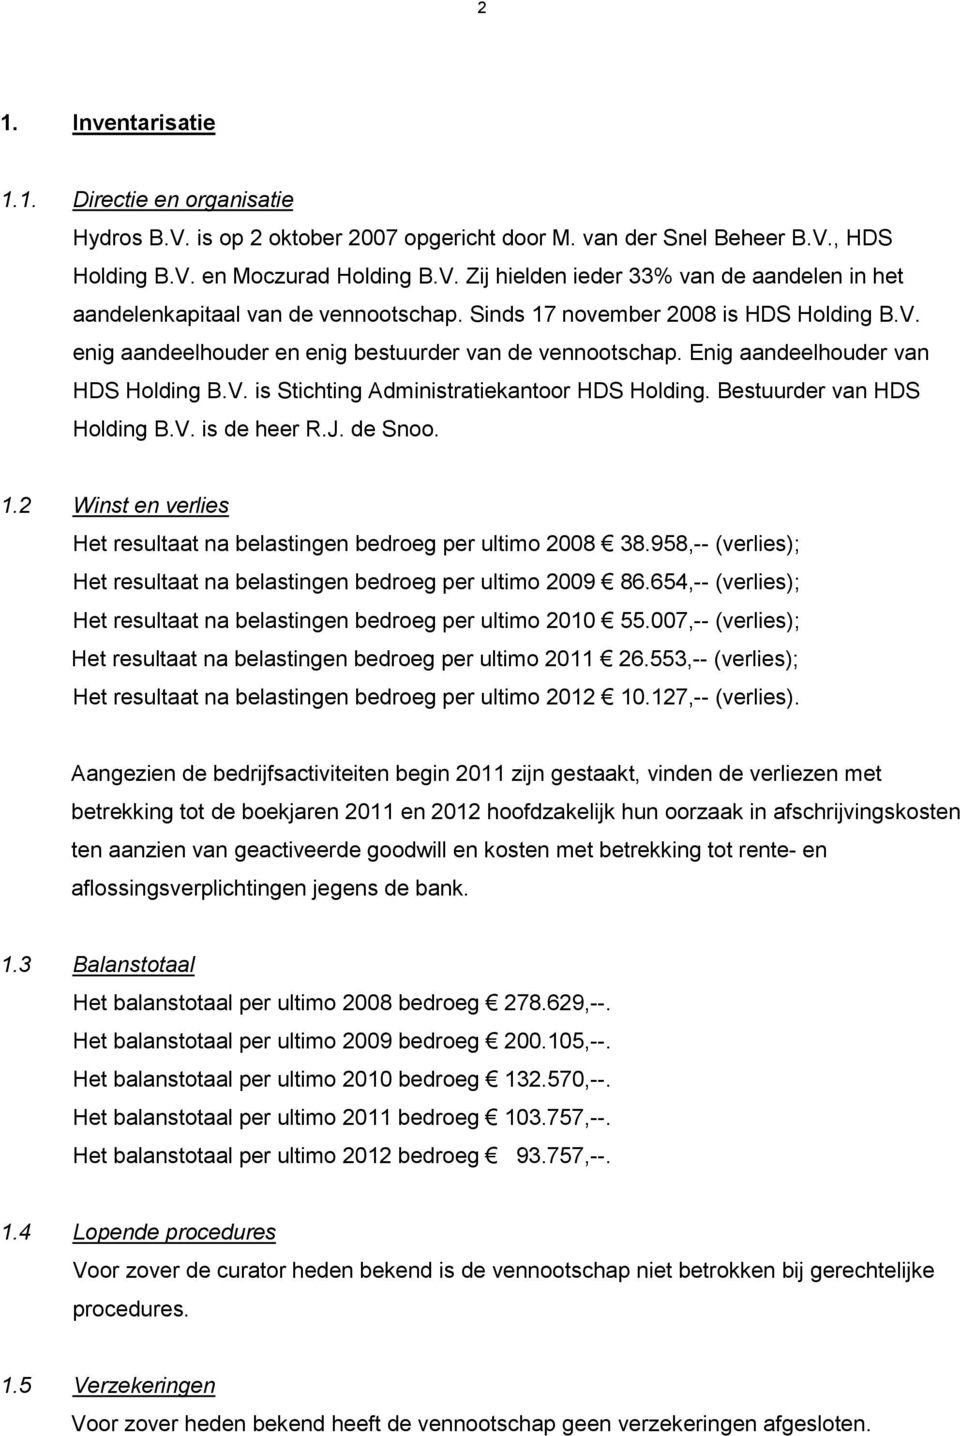 Bestuurder van HDS Holding B.V. is de heer R.J. de Snoo. 1.2 Winst en verlies Het resultaat na belastingen bedroeg per ultimo 2008 38.